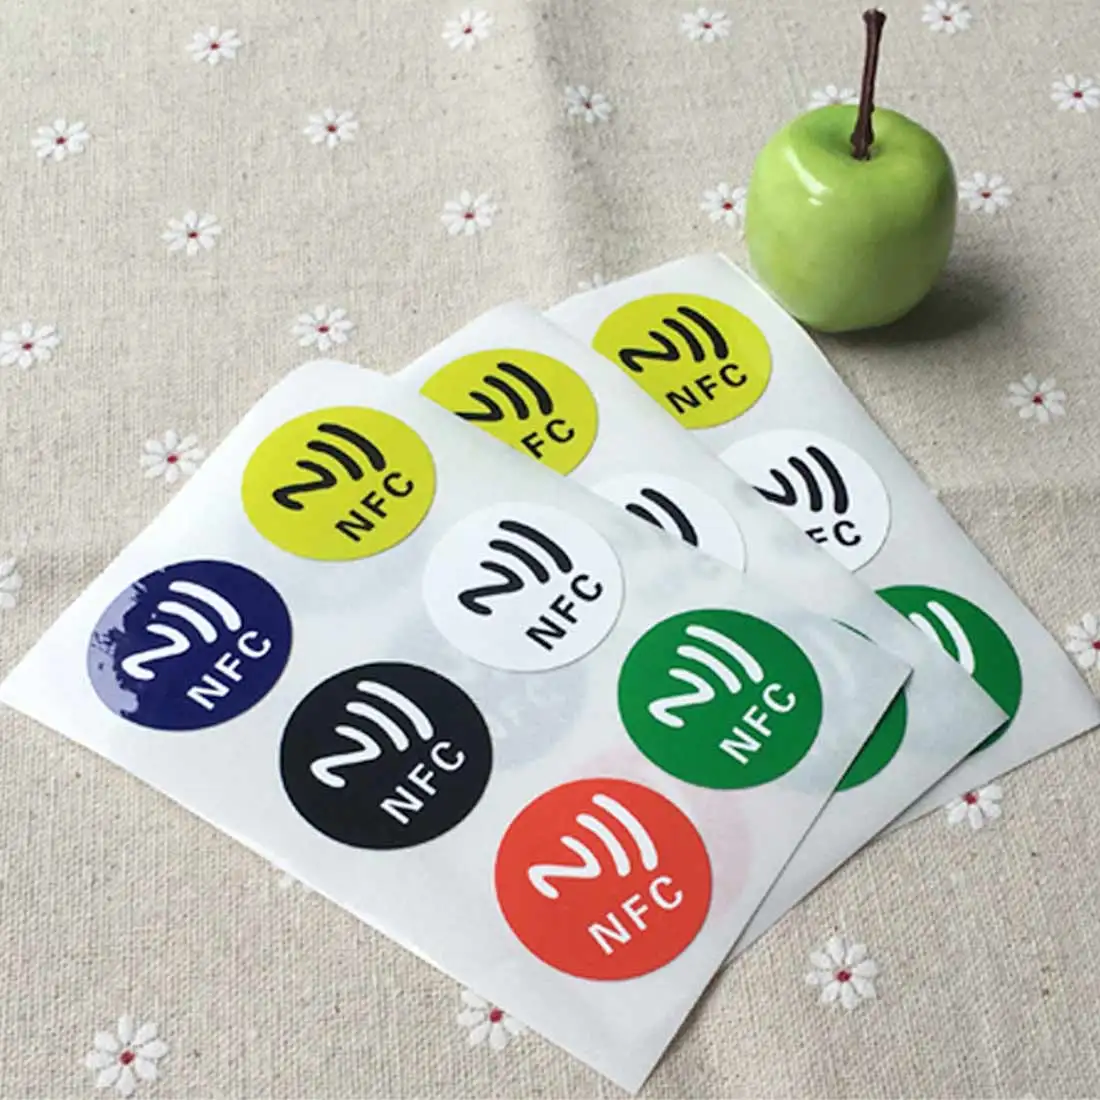 6 наклейка-этикетка с NFC NFC213 чип совместим со всеми NFC мобильный телефон этикетка наклейки Ёмкость умная наклейка